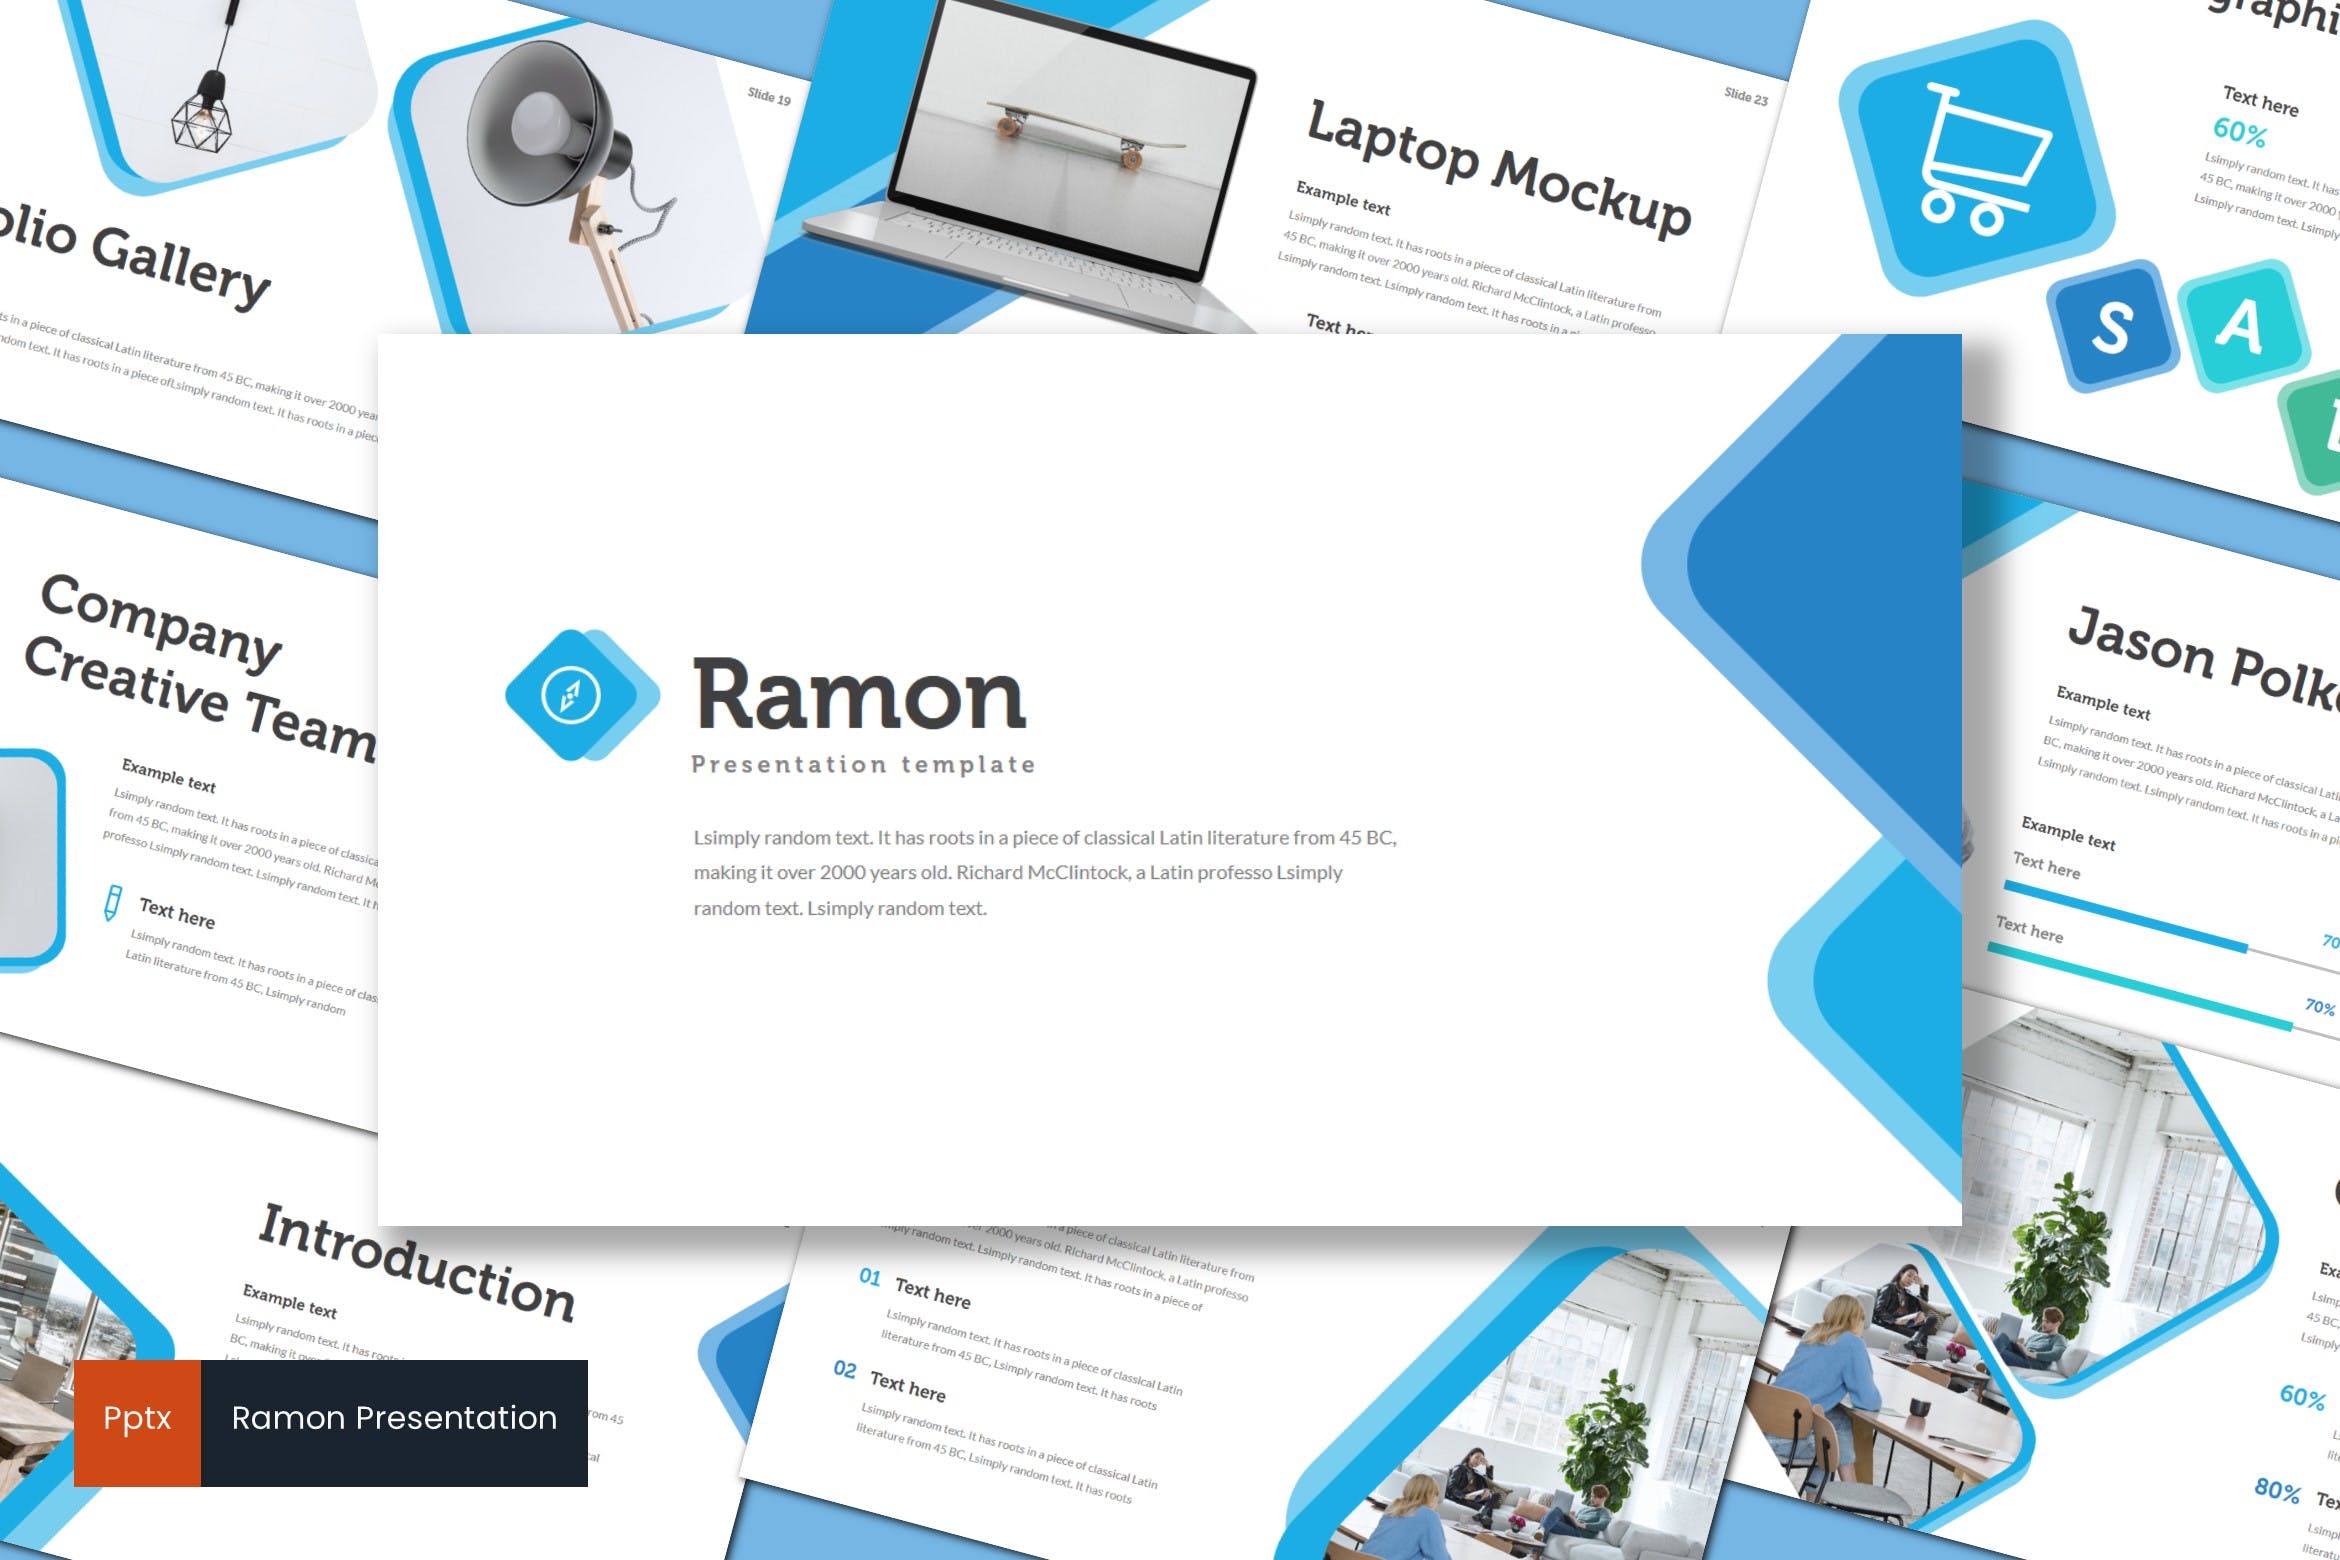 室内设计品牌宣传16素材精选PPT模板 Ramon – Powerpoint Template插图